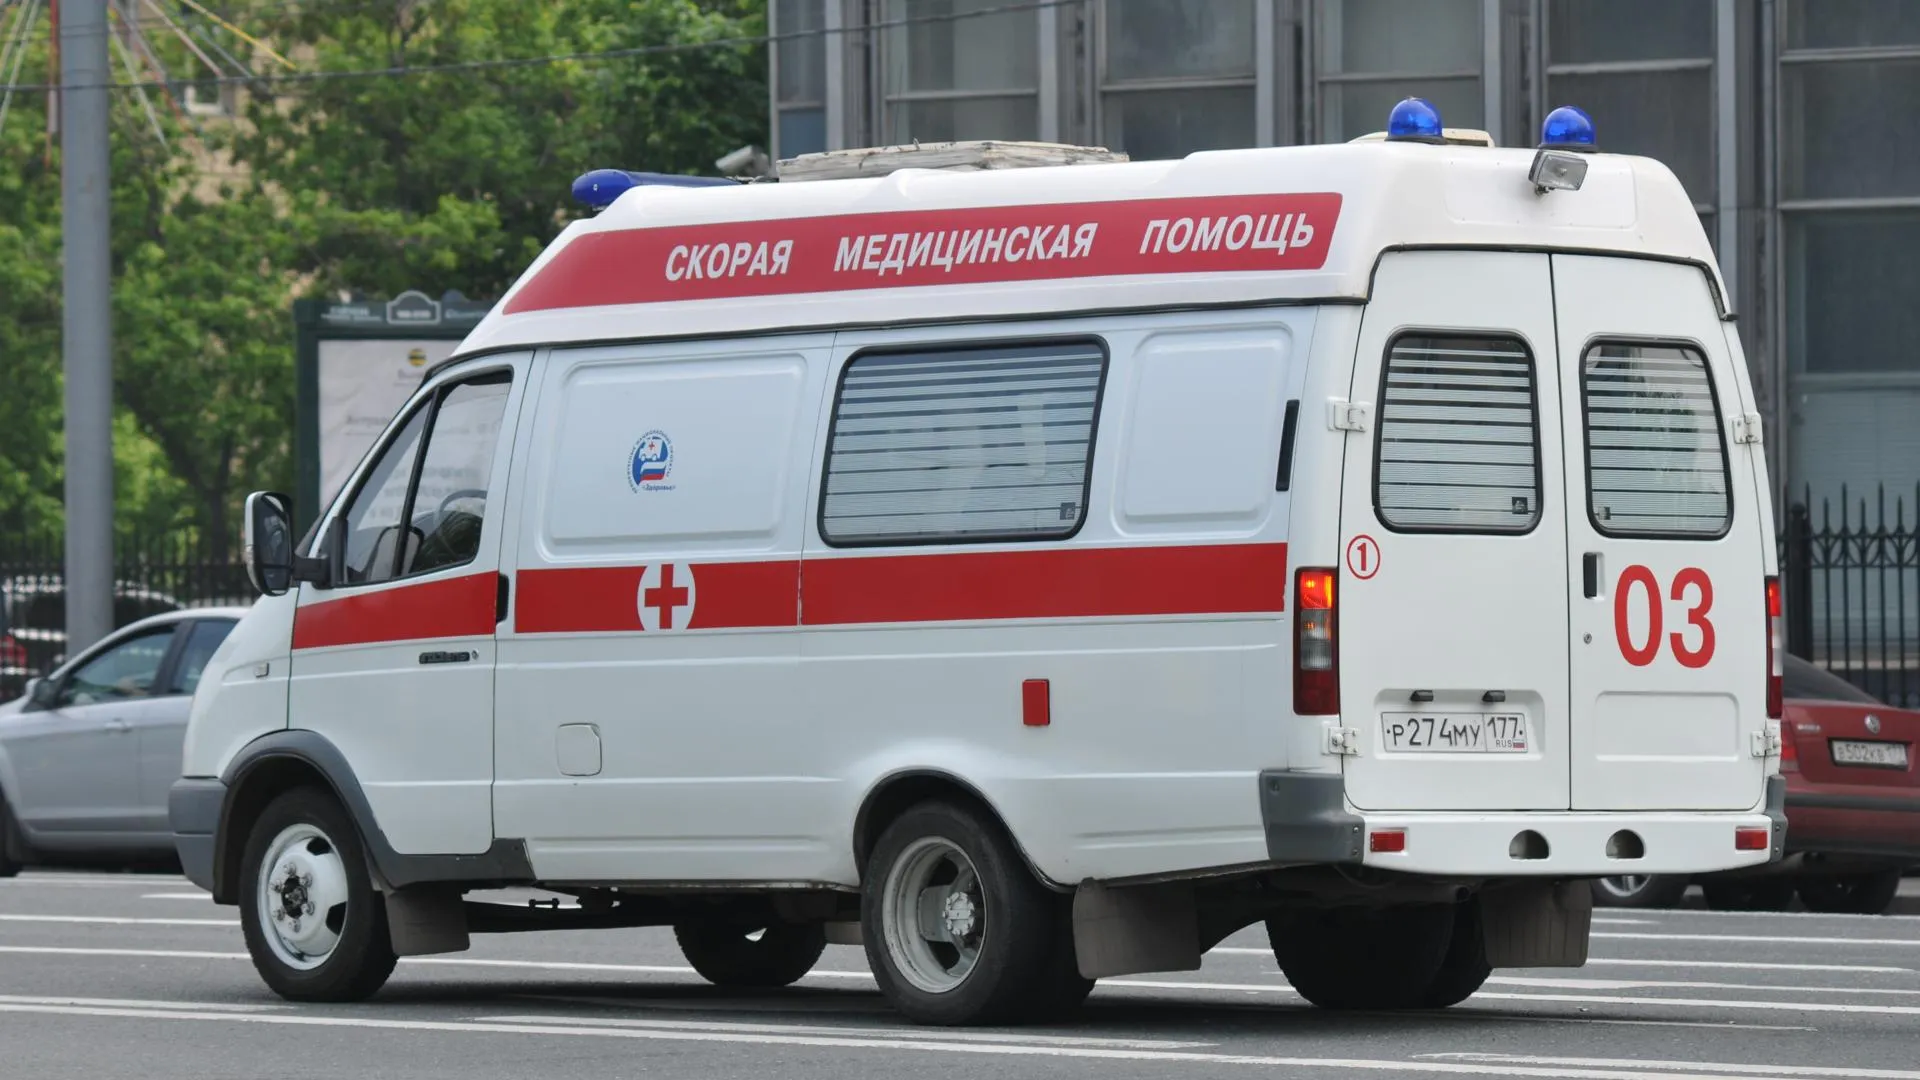 Число пострадавших при пожаре в Егорьевске возросло до 4 — МЧС